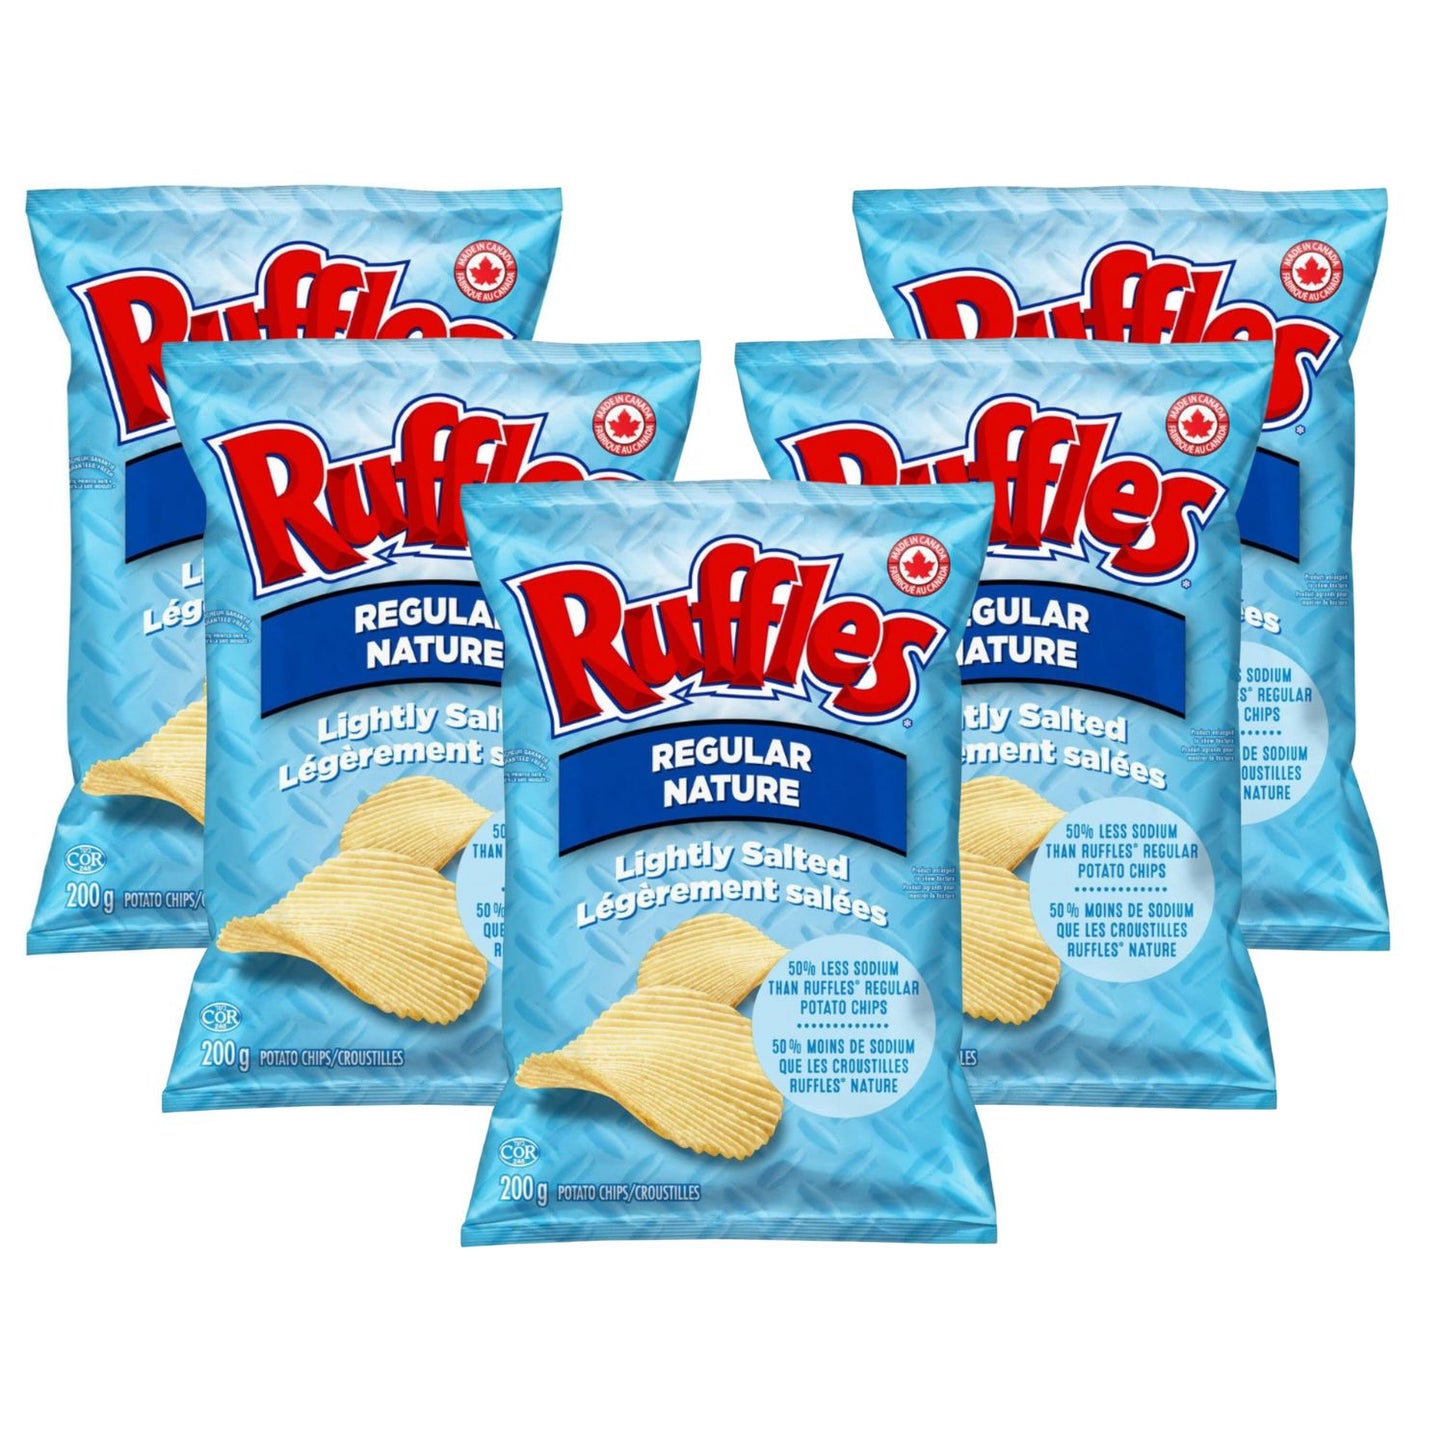 Ruffles Regular Lightly Salted pack of 5